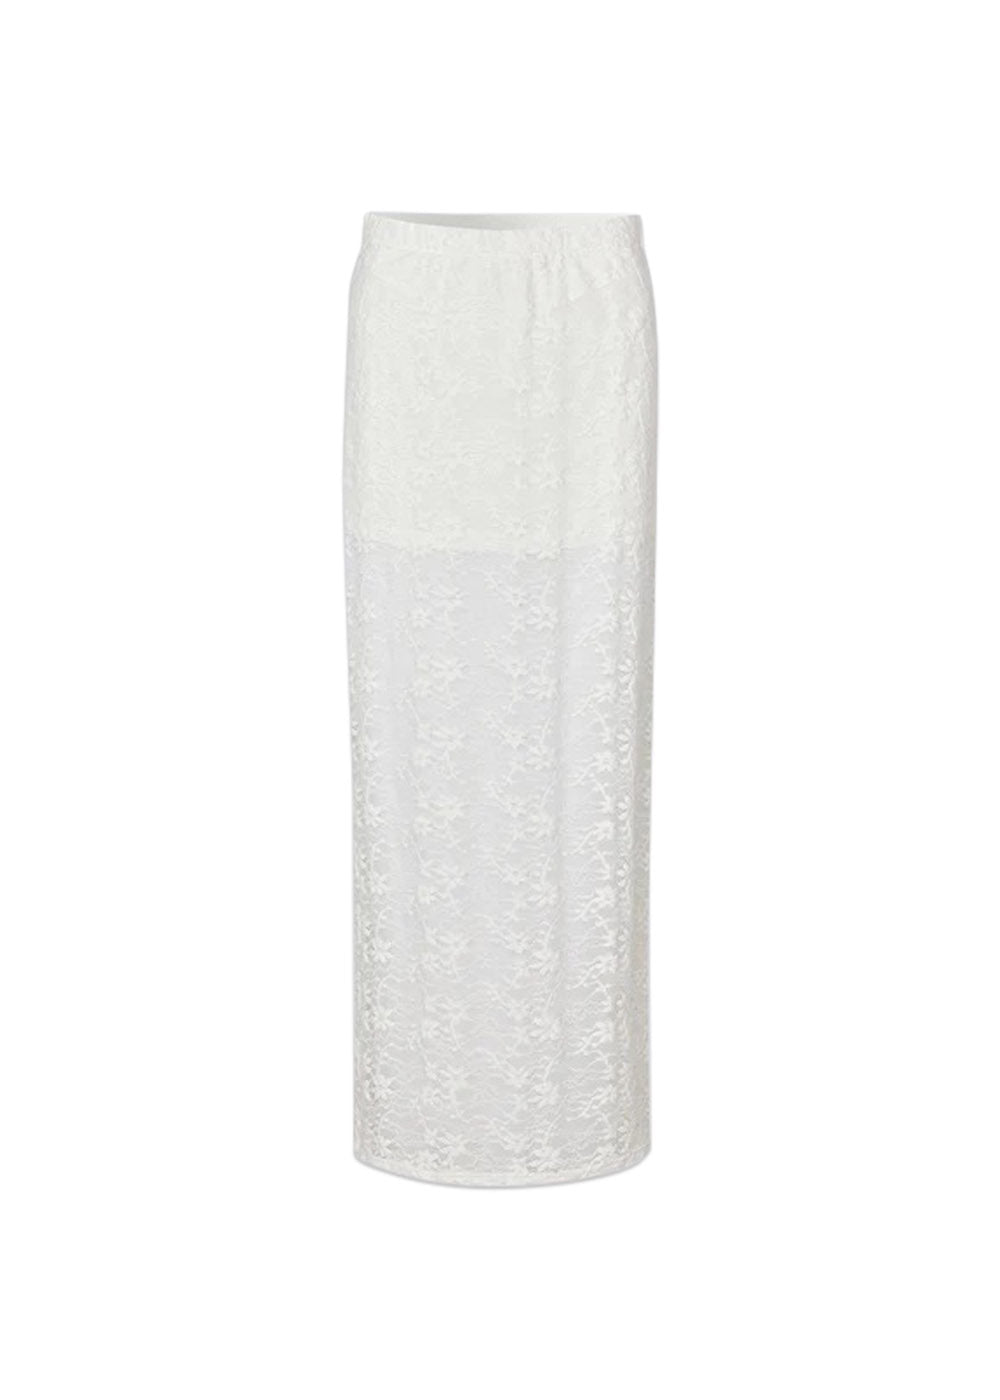 TildeMD skirt - Soft White